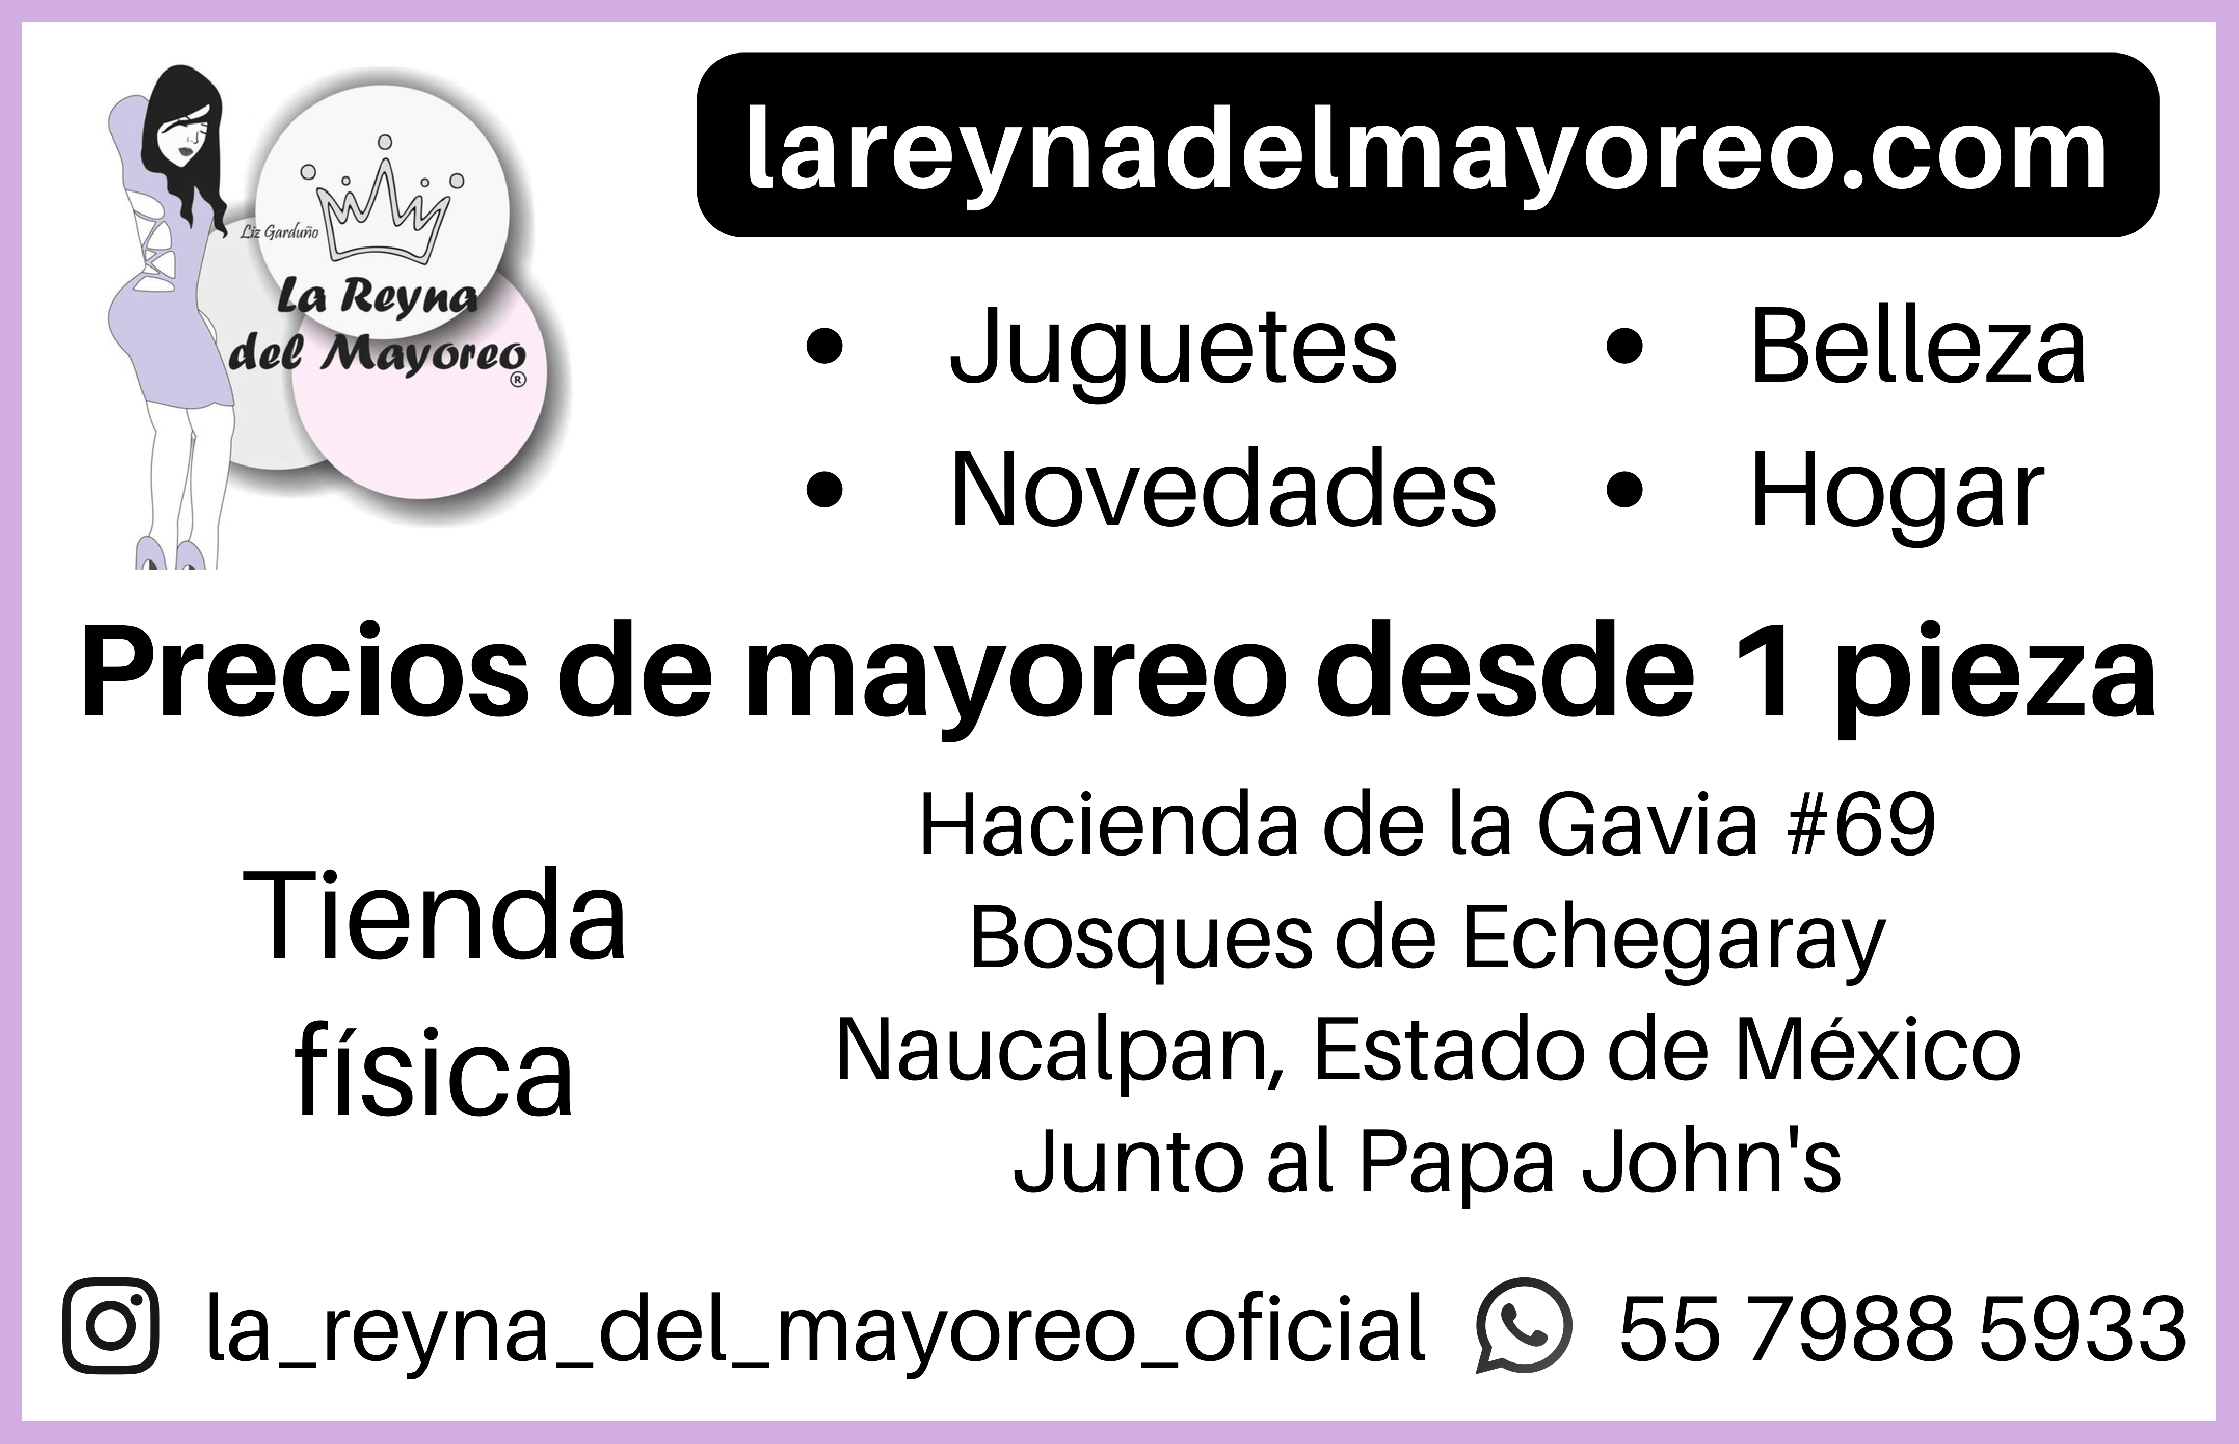 LAREYNADELMAYOREO.COM

PRECIOS DE MAYOREO